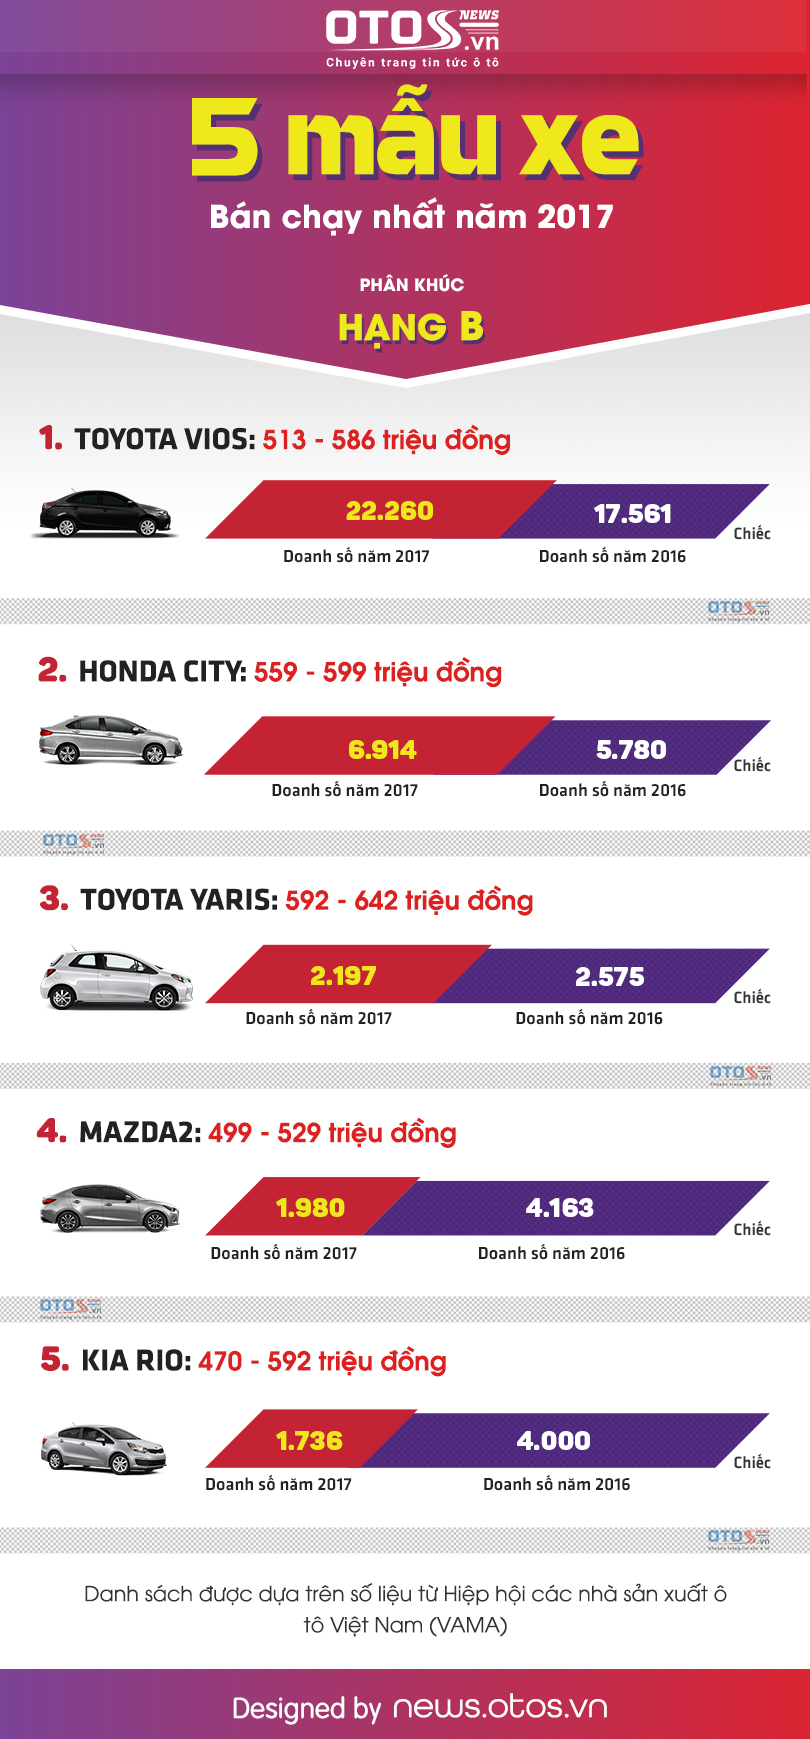 5 xe hạng B bán chạy nhất thị trường Việt năm 2017: Toyota Vios 